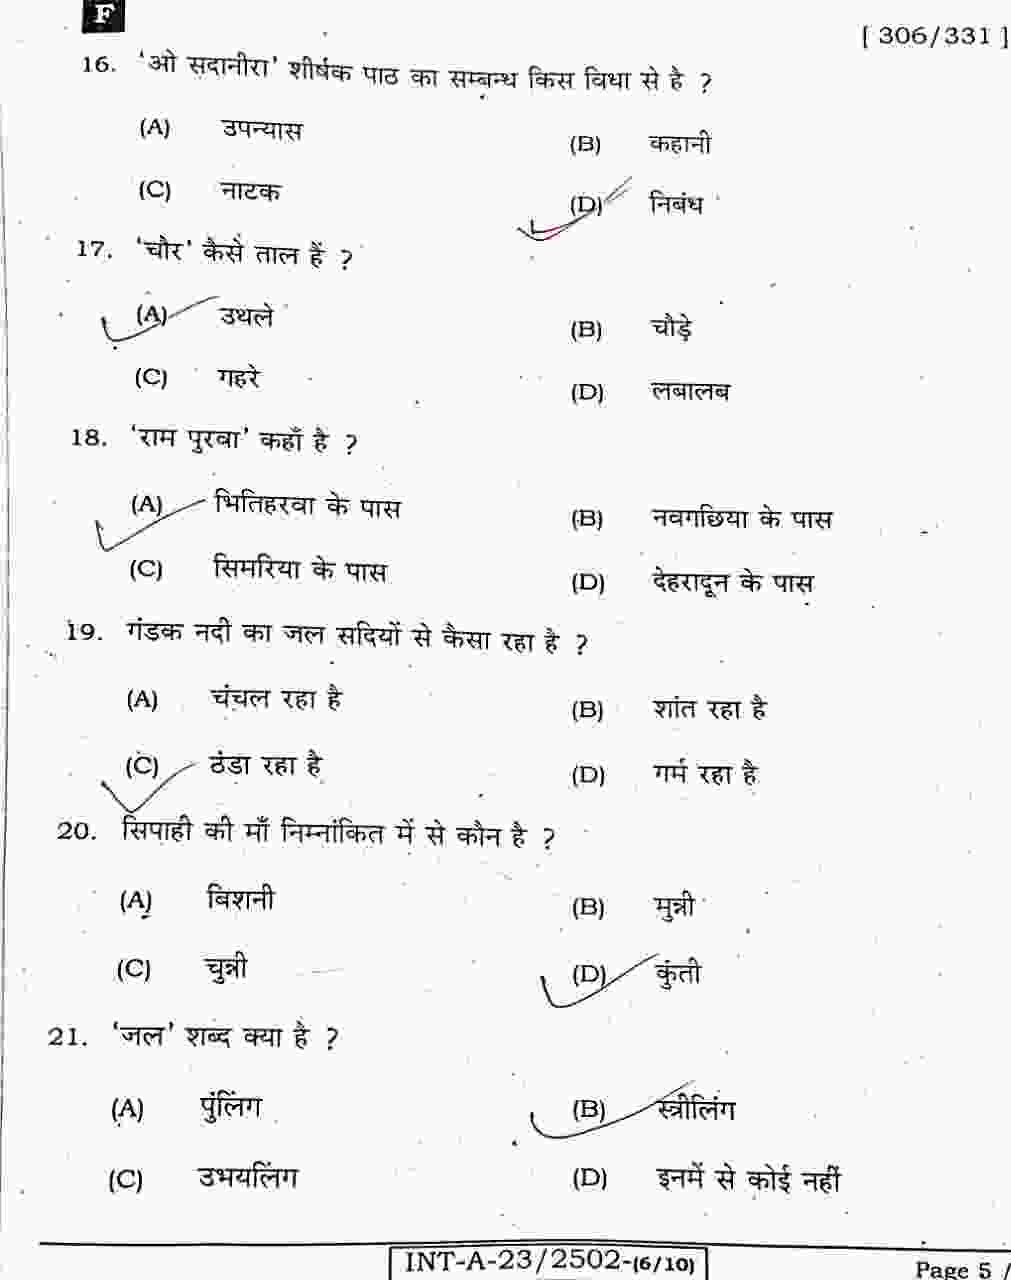 Bihar Board 12th Hindi Objective Answer key 2023